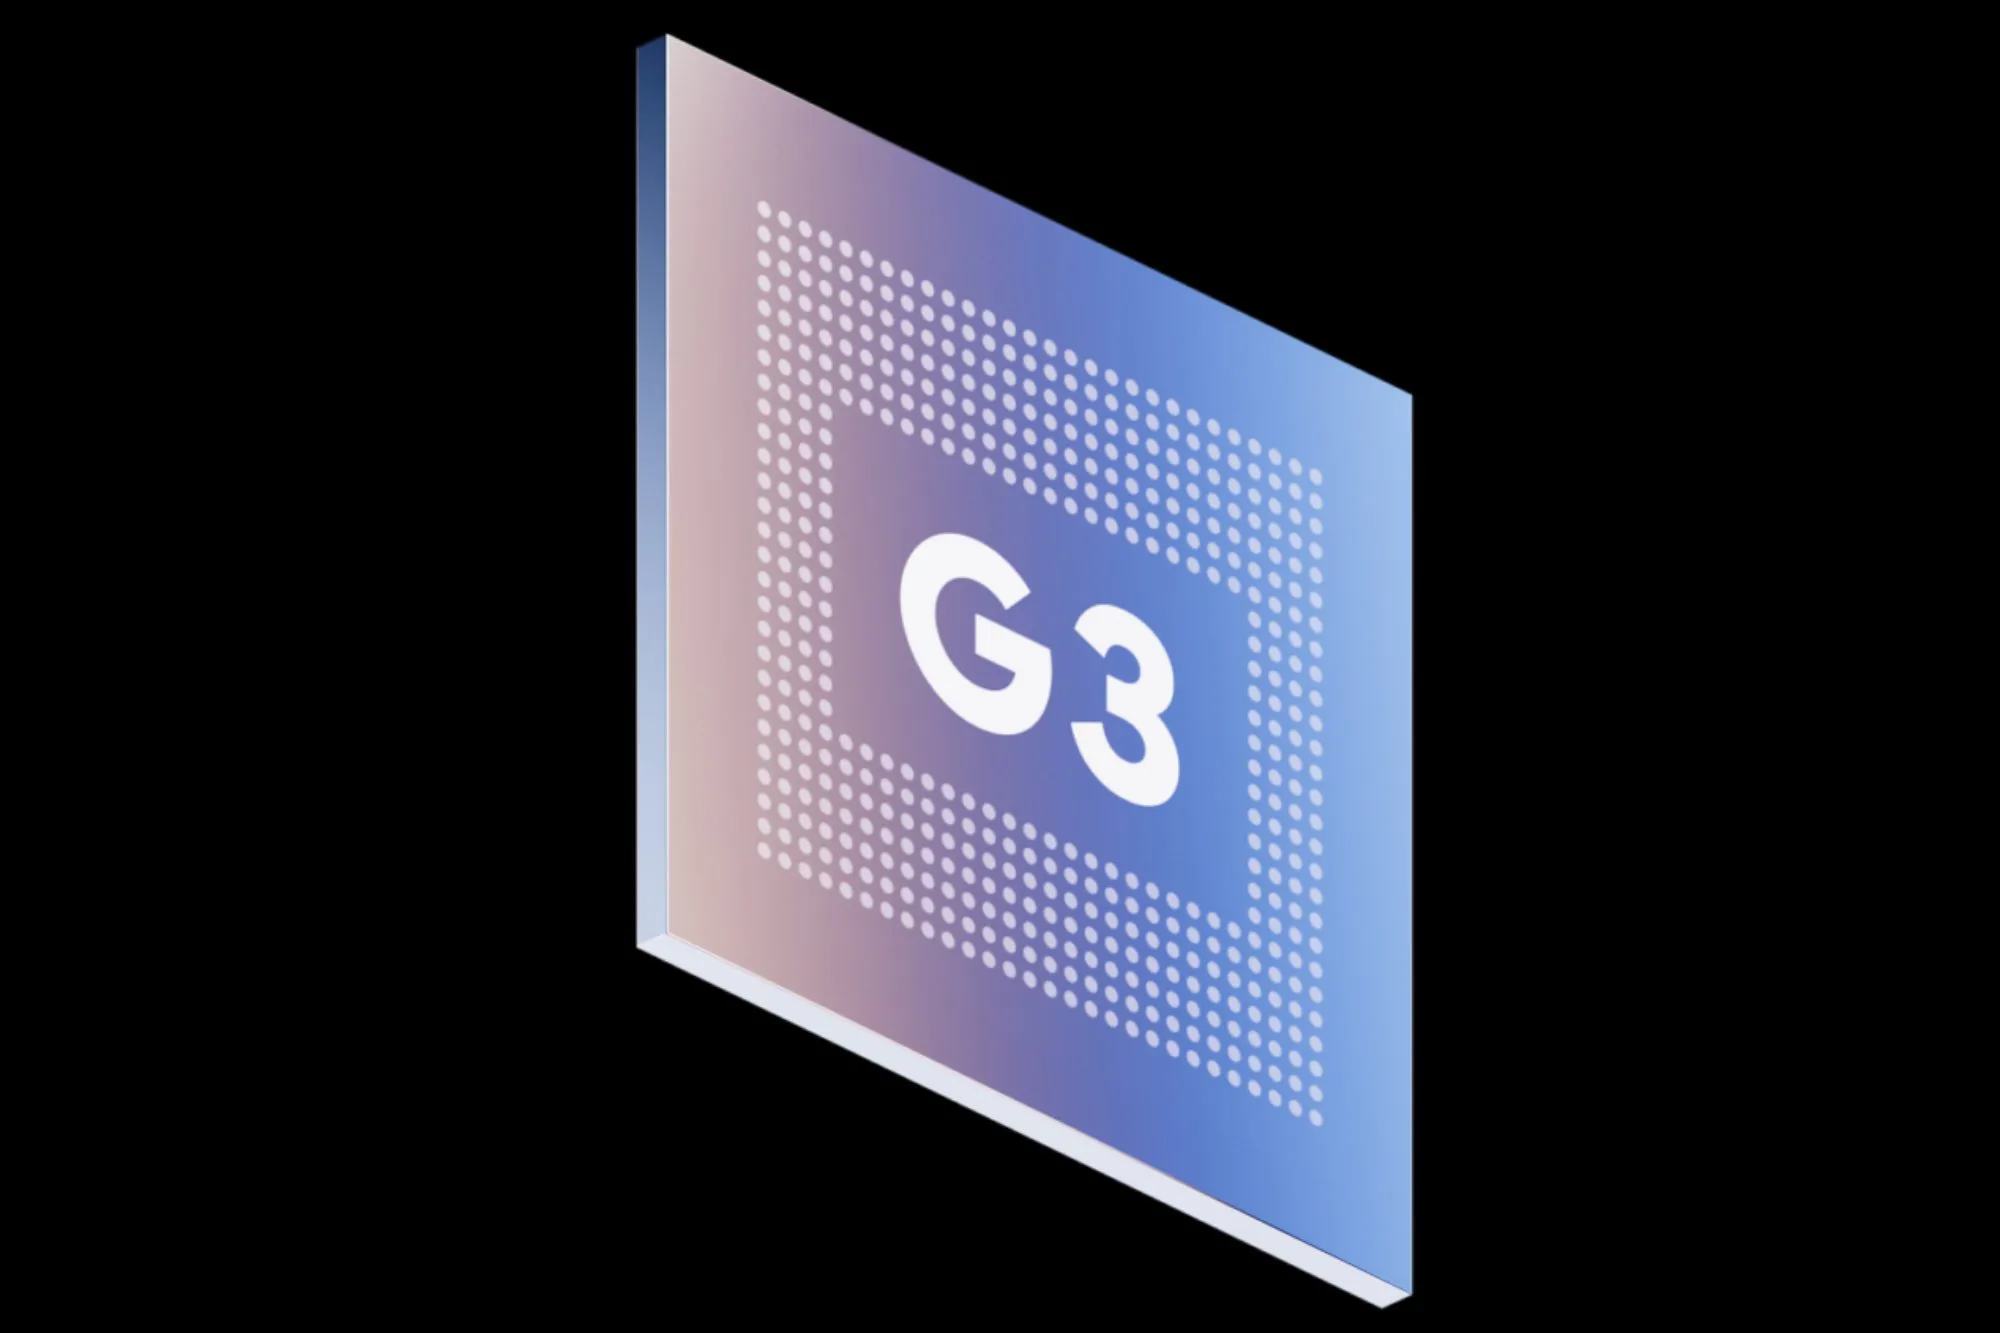 Официальный продуктовый рендер чипсета Tensor G3 от Google.